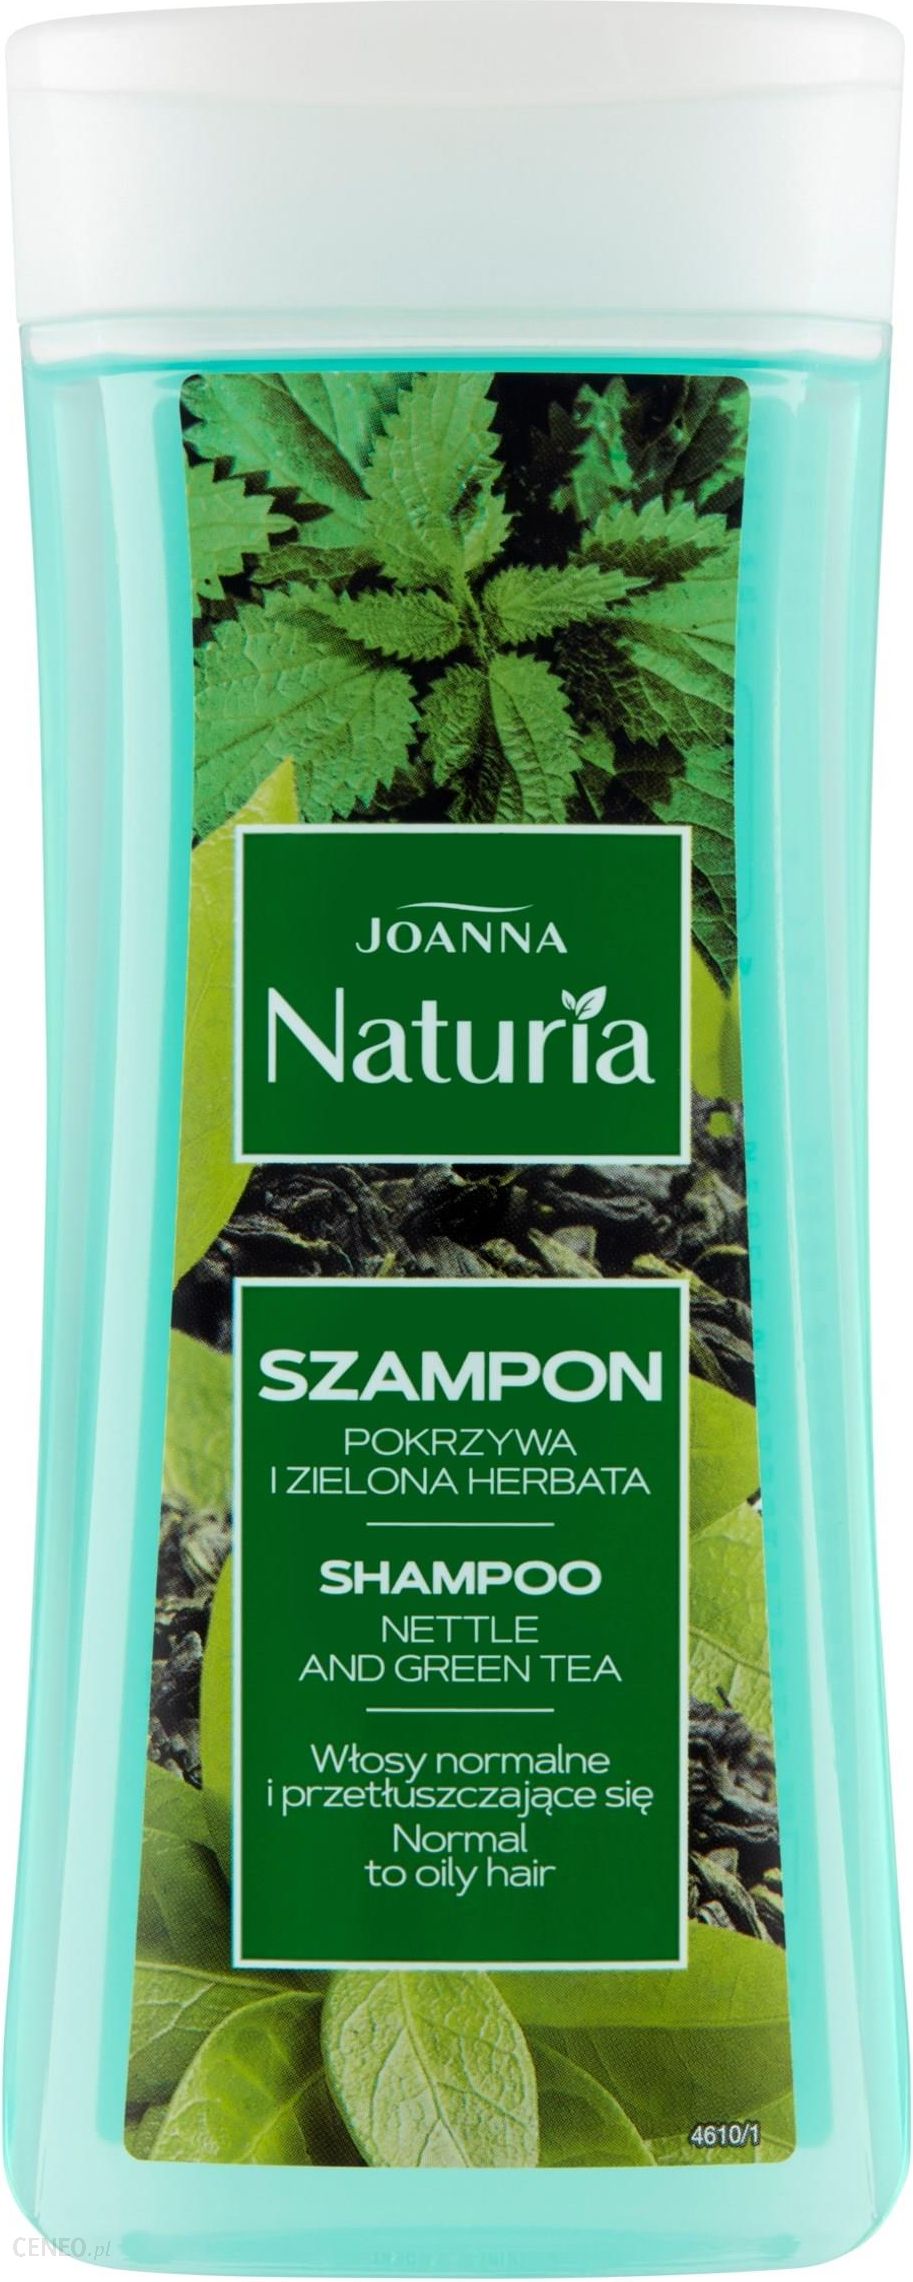 joanna odżywka do włosów pokrzywa i zielona herbata